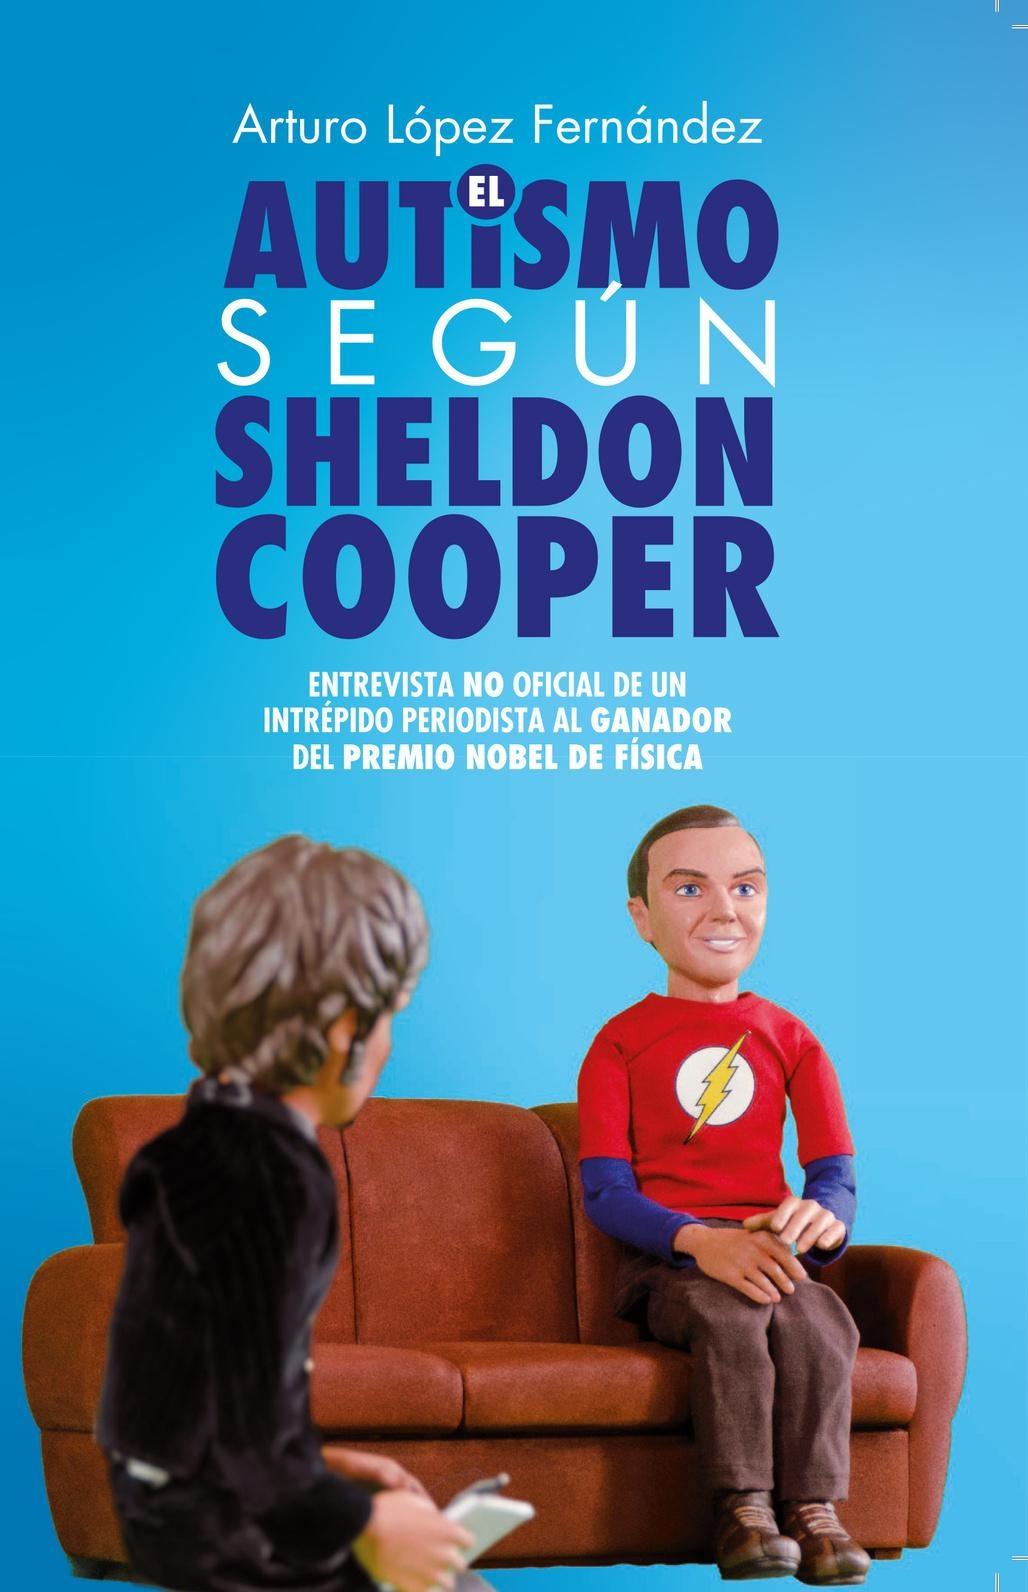 Autismo según Sheldon Cooper, El "Entrevista no Oficial de un Intrépido Periodista al Ganador del Premio N". 